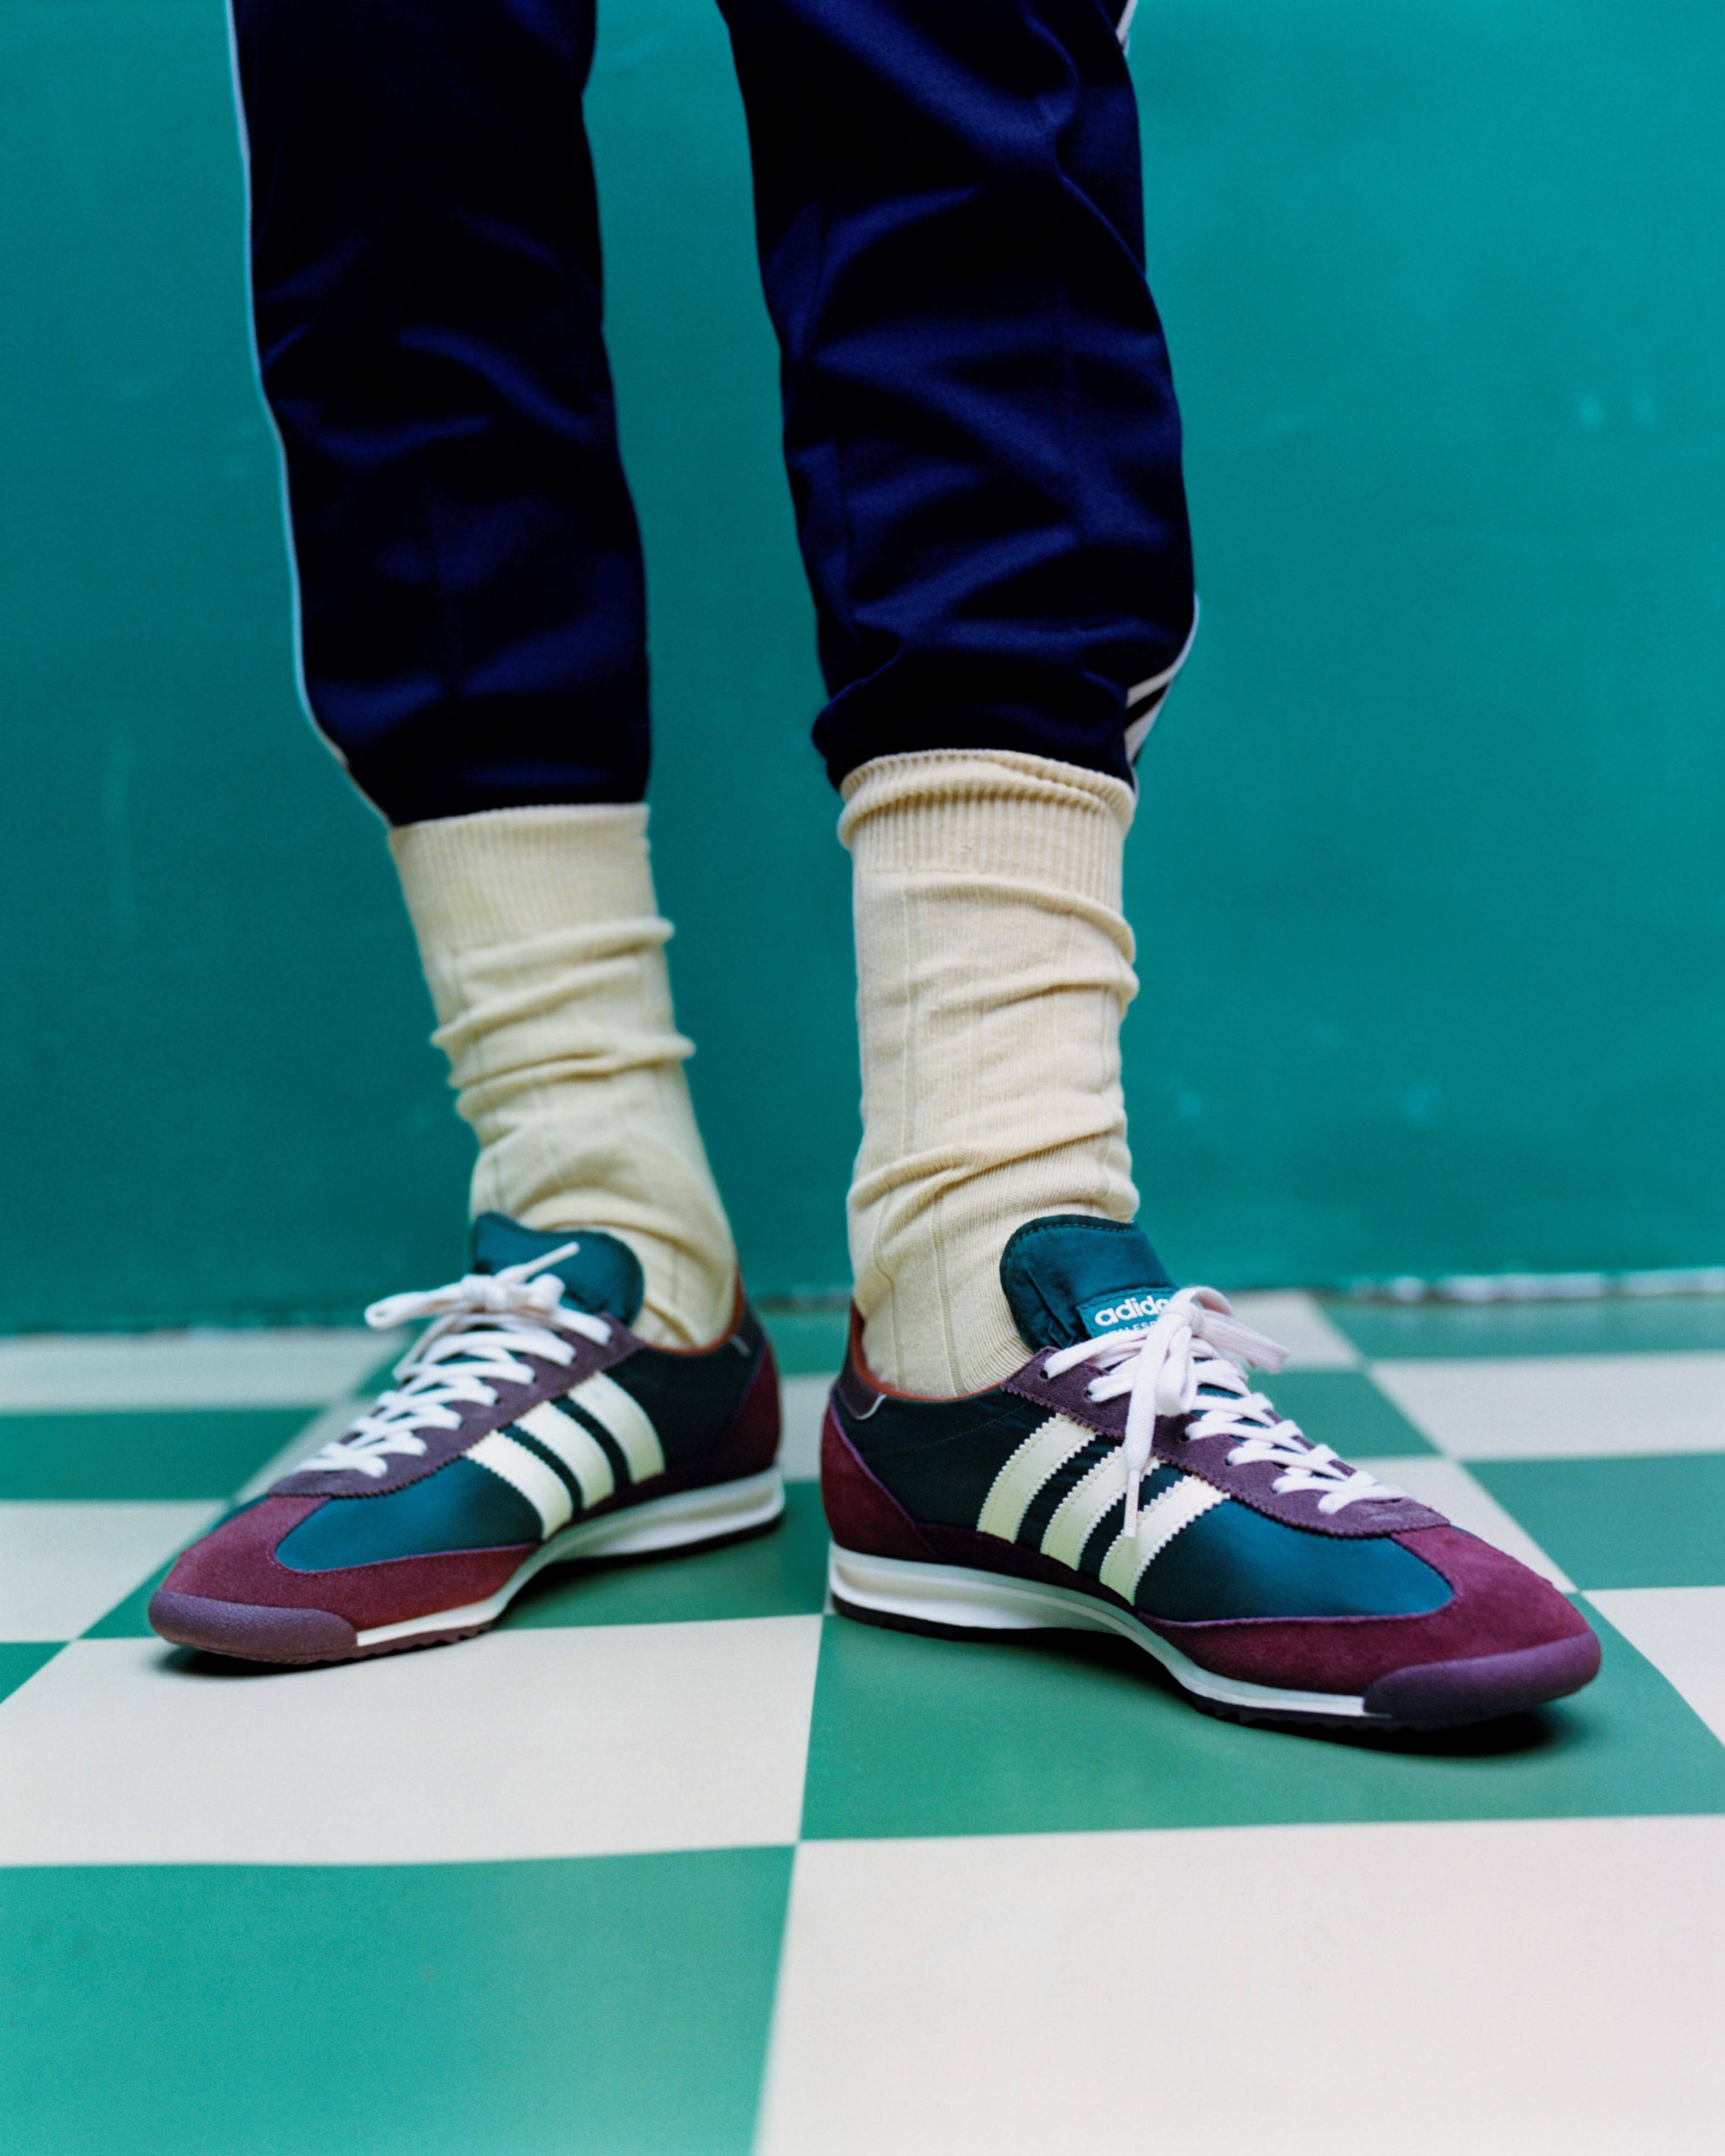 Adidas [[SAMBA y SL72]] ++ TOP TOP++ | zapatillasysneakers.com